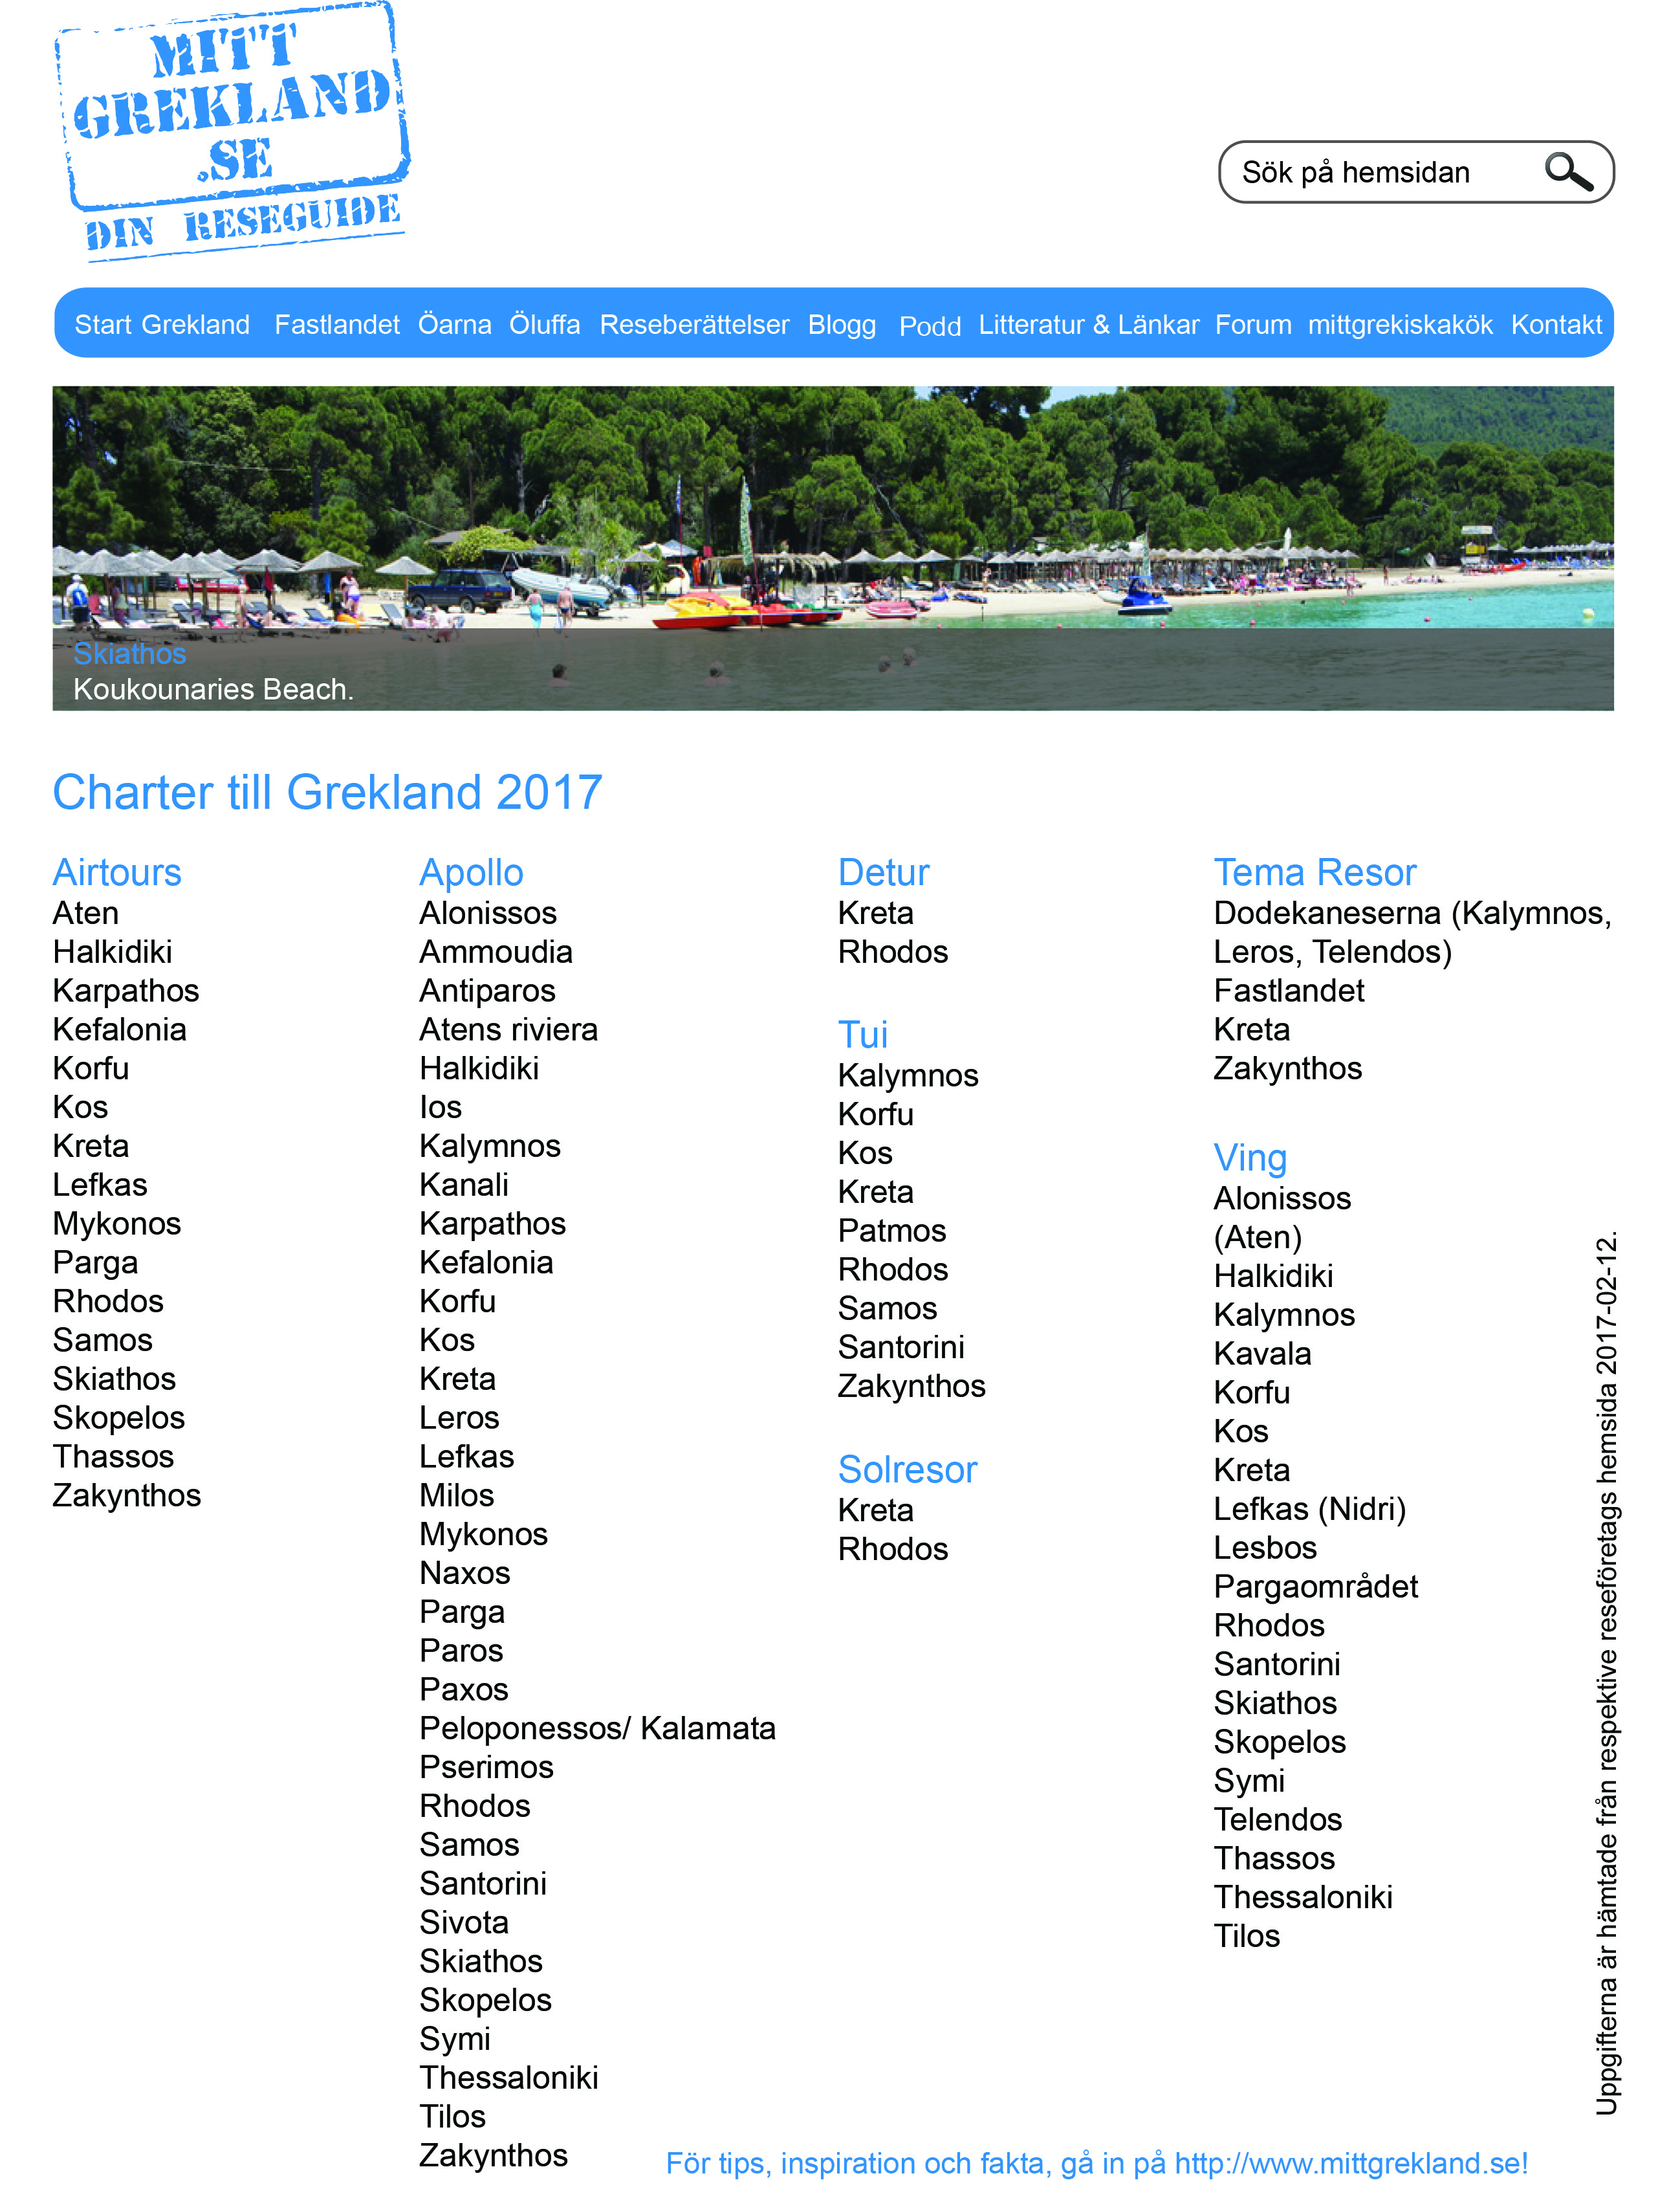 Charter till Grekland 2017